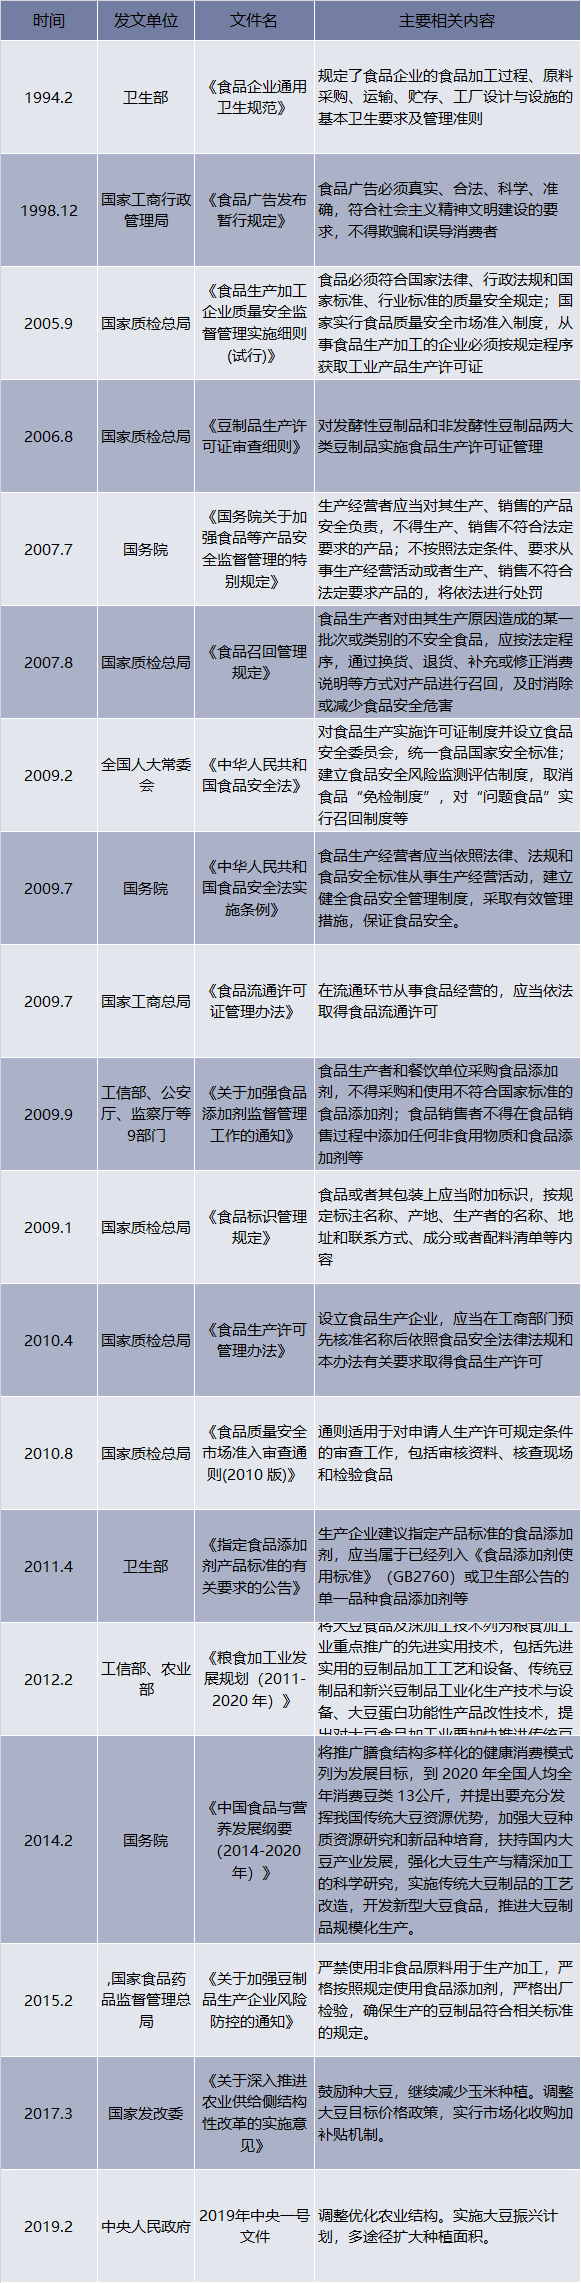 1994-2019年中国豆制品行业相关产业政策和法规